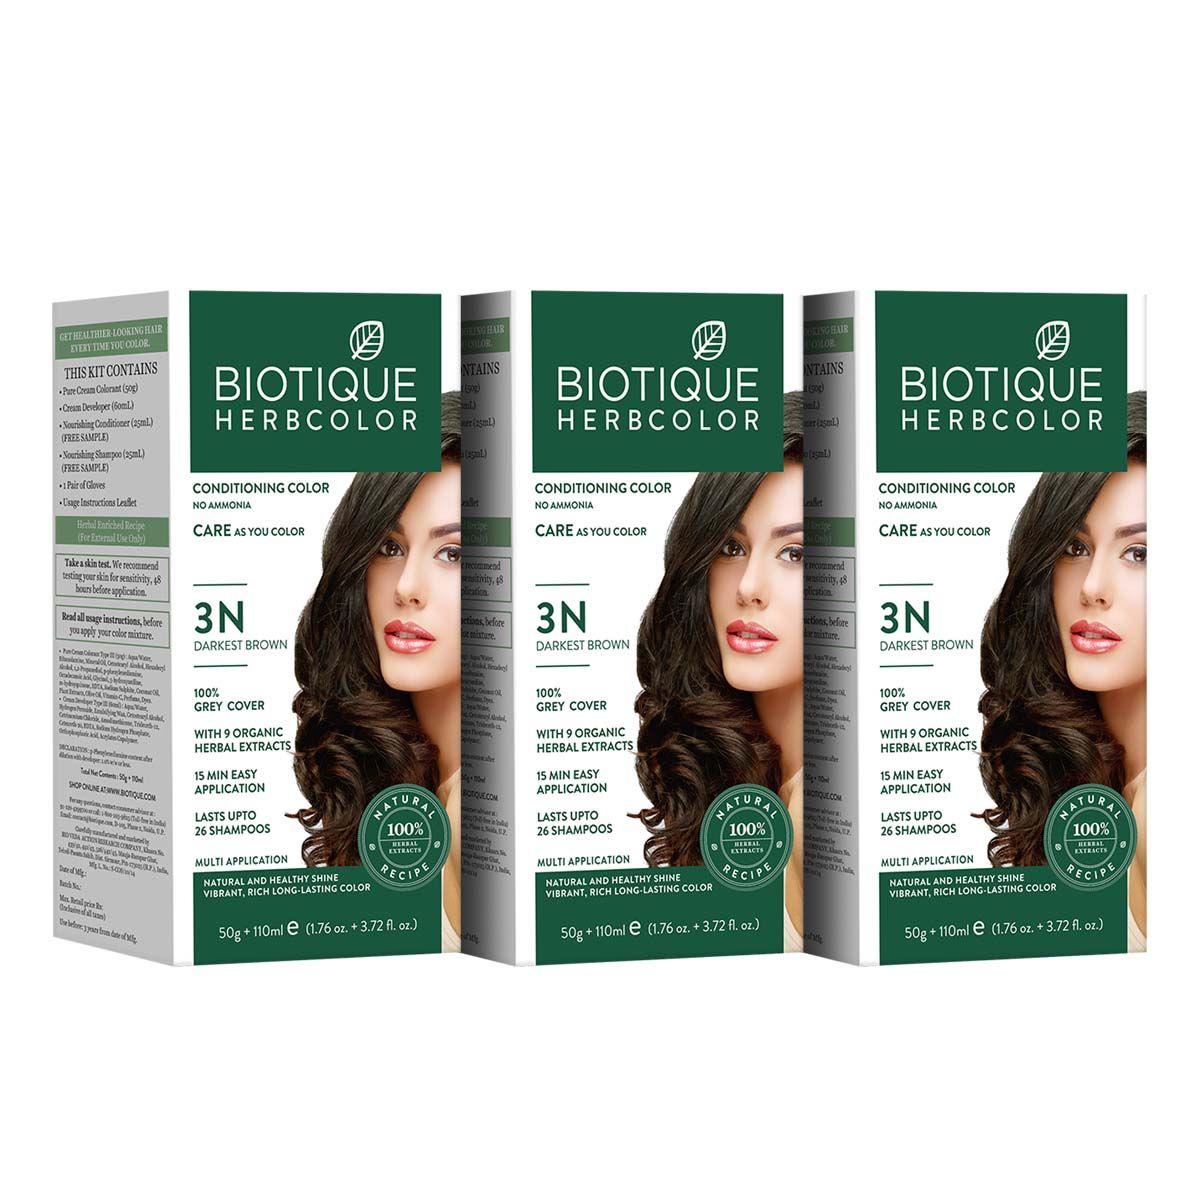 Biotique Bio Herbcolor 3N Darkest Brown (50 g +110 ml)pack of 3